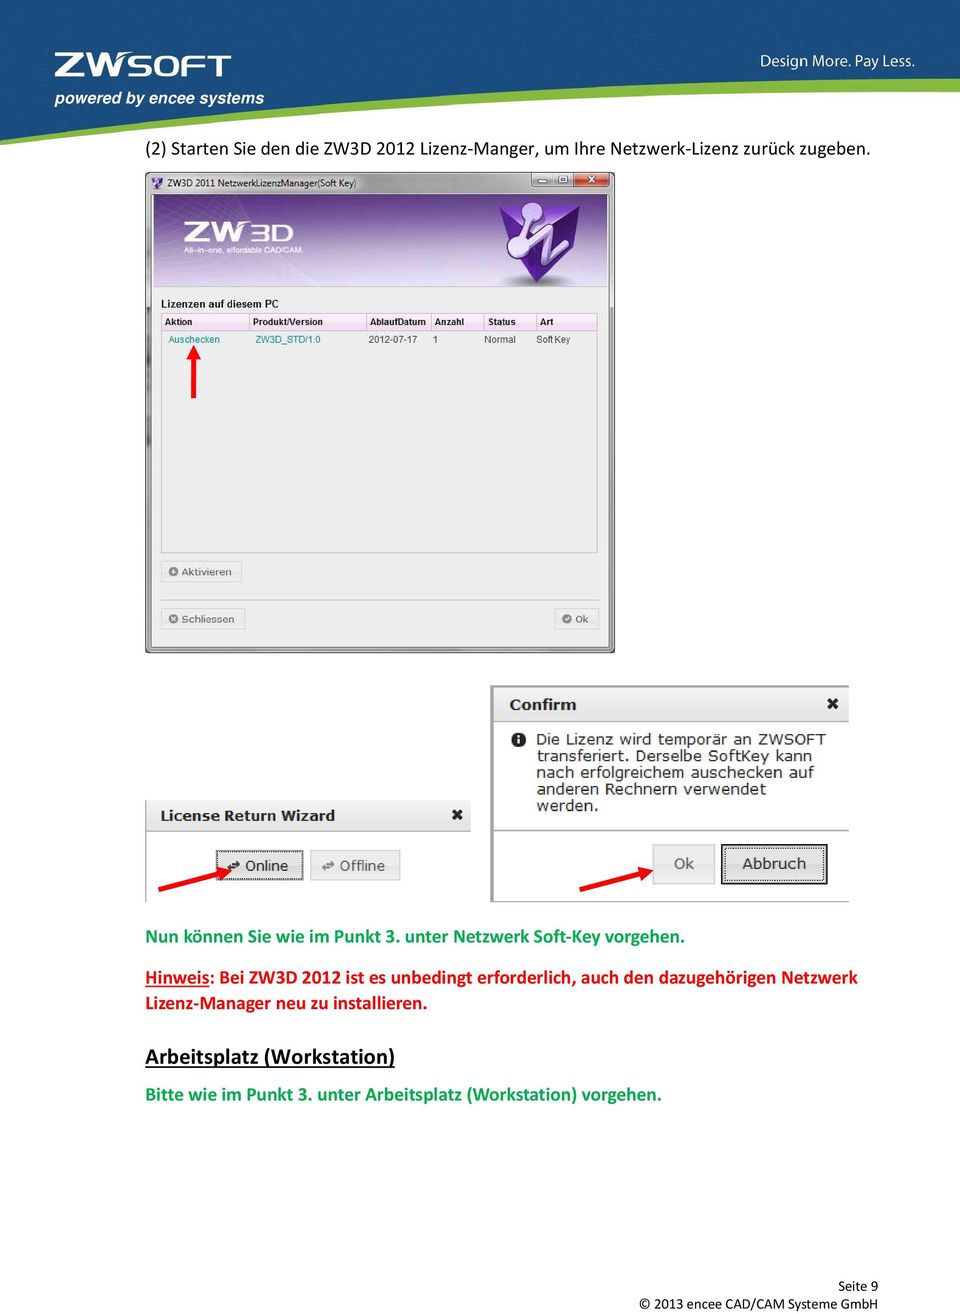 Hinweis: Bei ZW3D 2012 ist es unbedingt erforderlich, auch den dazugehörigen Netzwerk